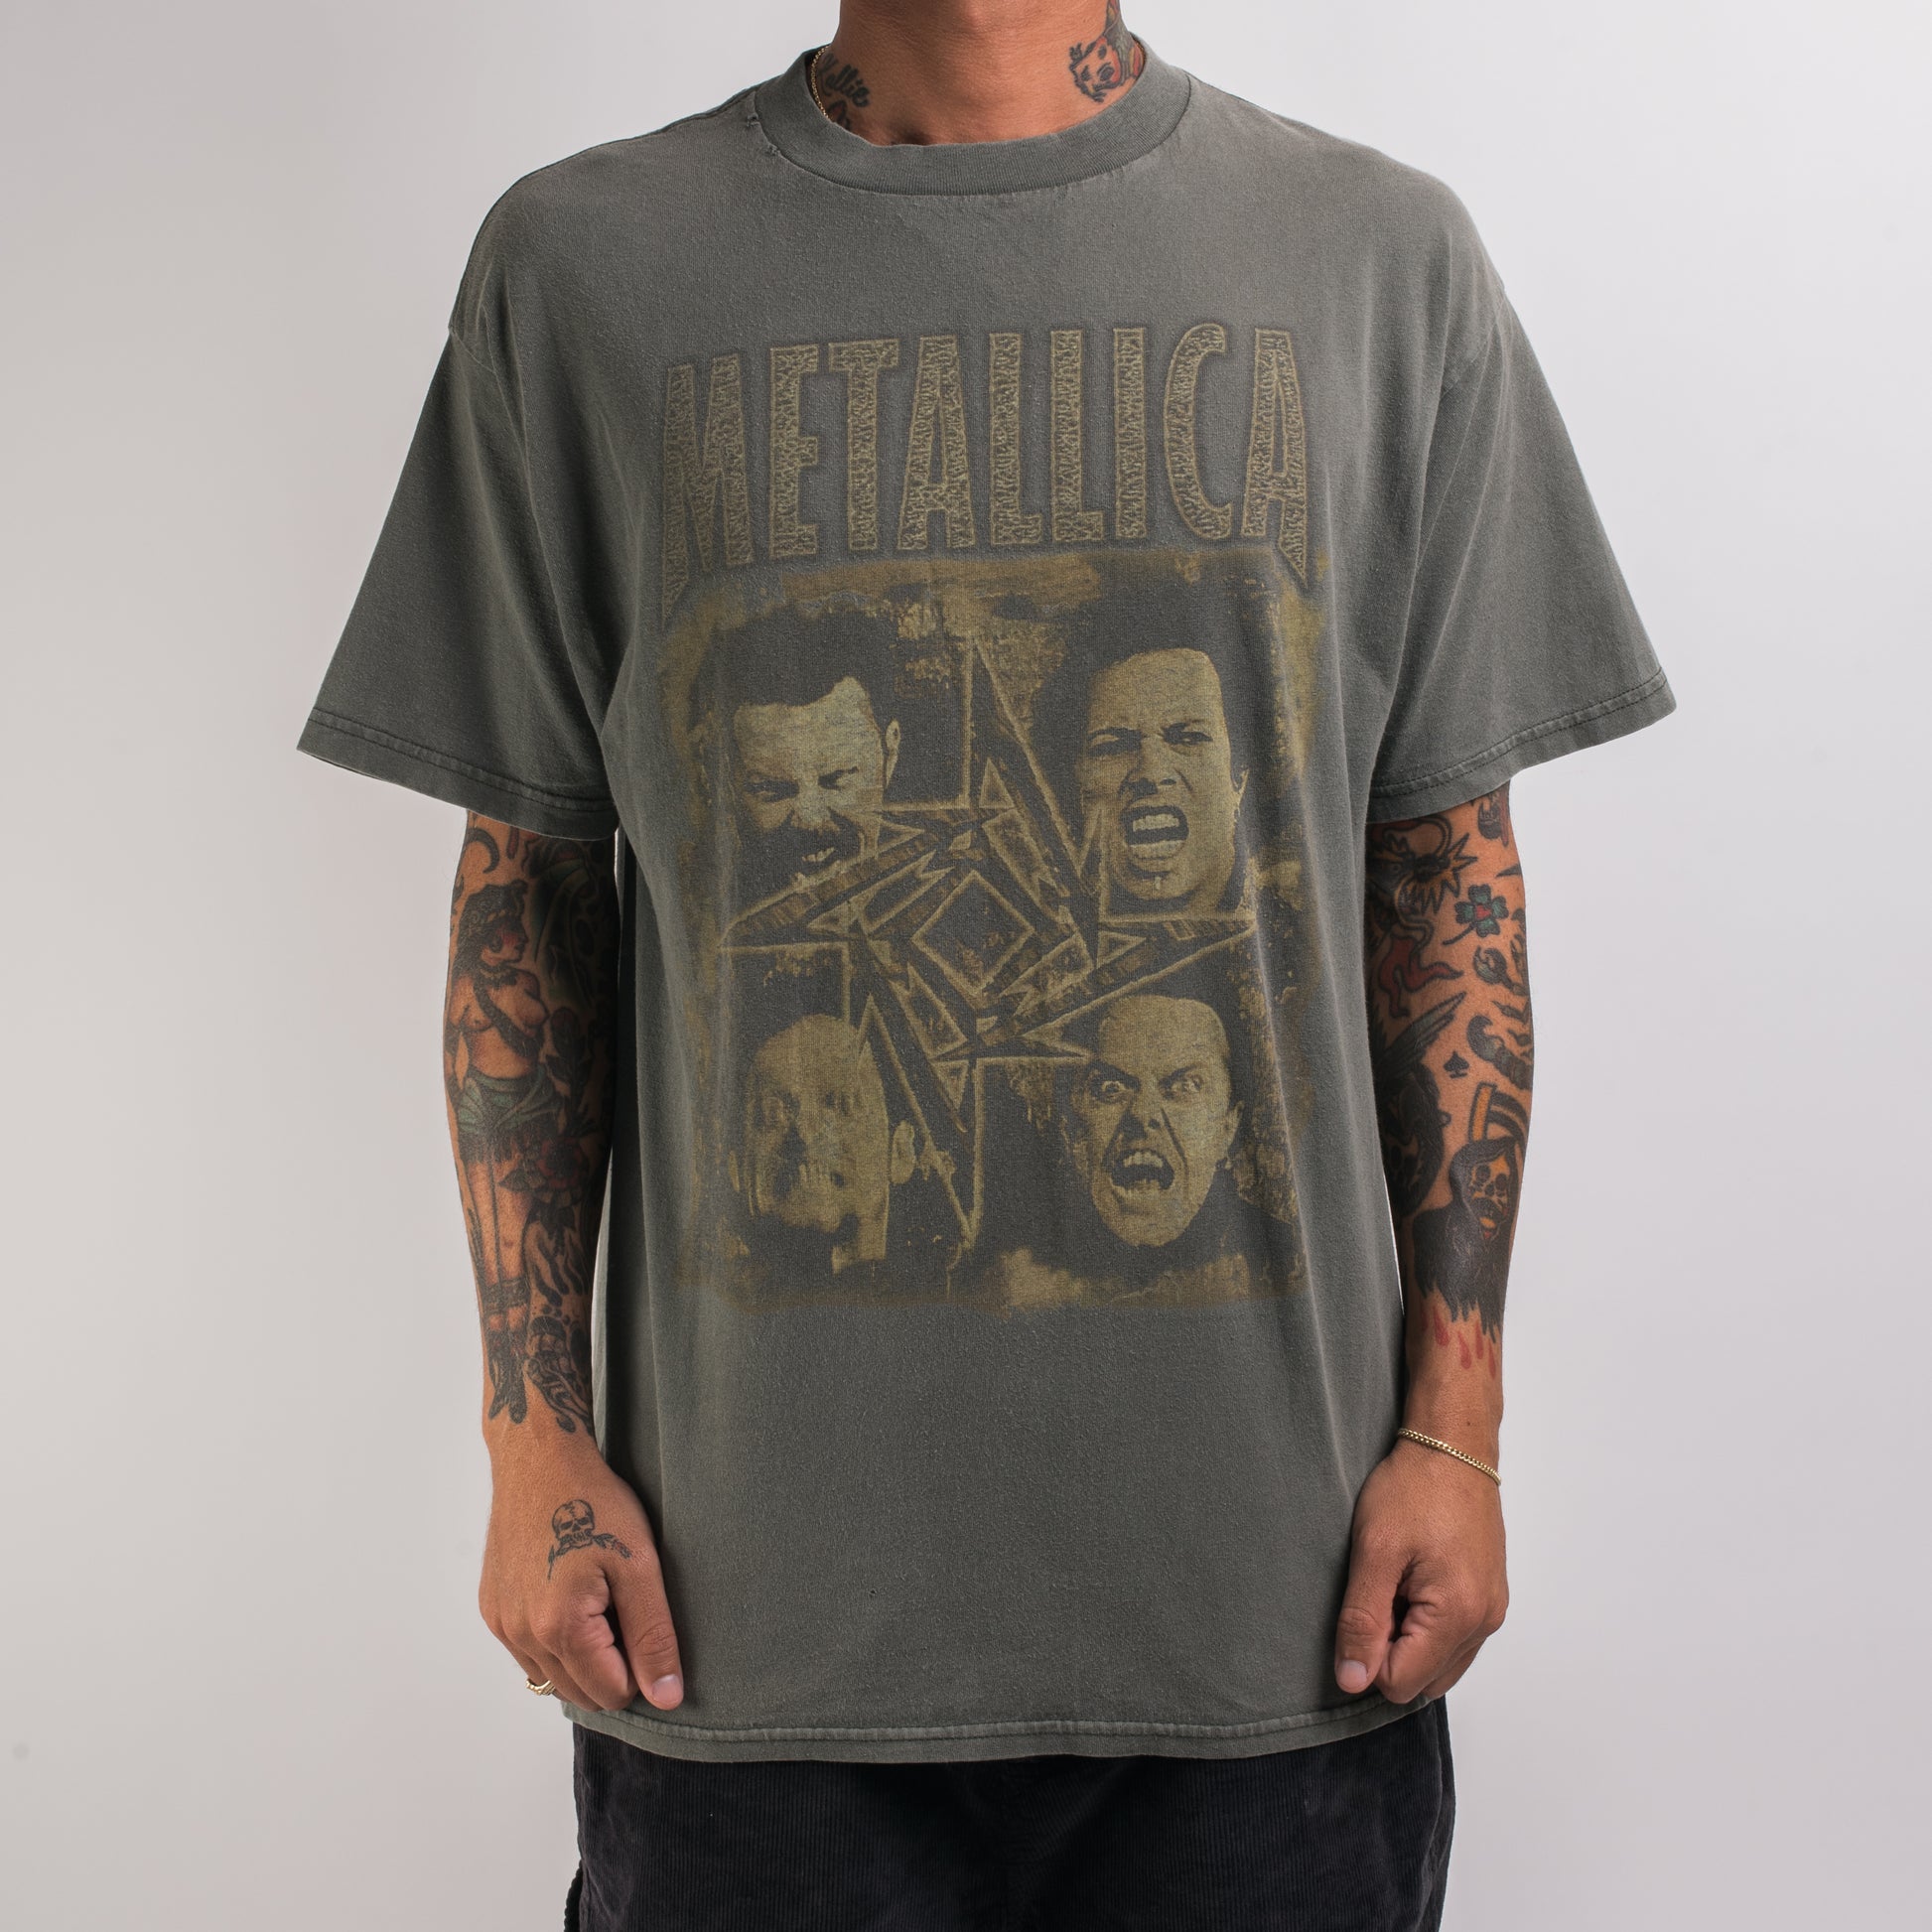 Vintage 1996 Metallica Poor Touring Me T-Shirt – Mills Vintage USA